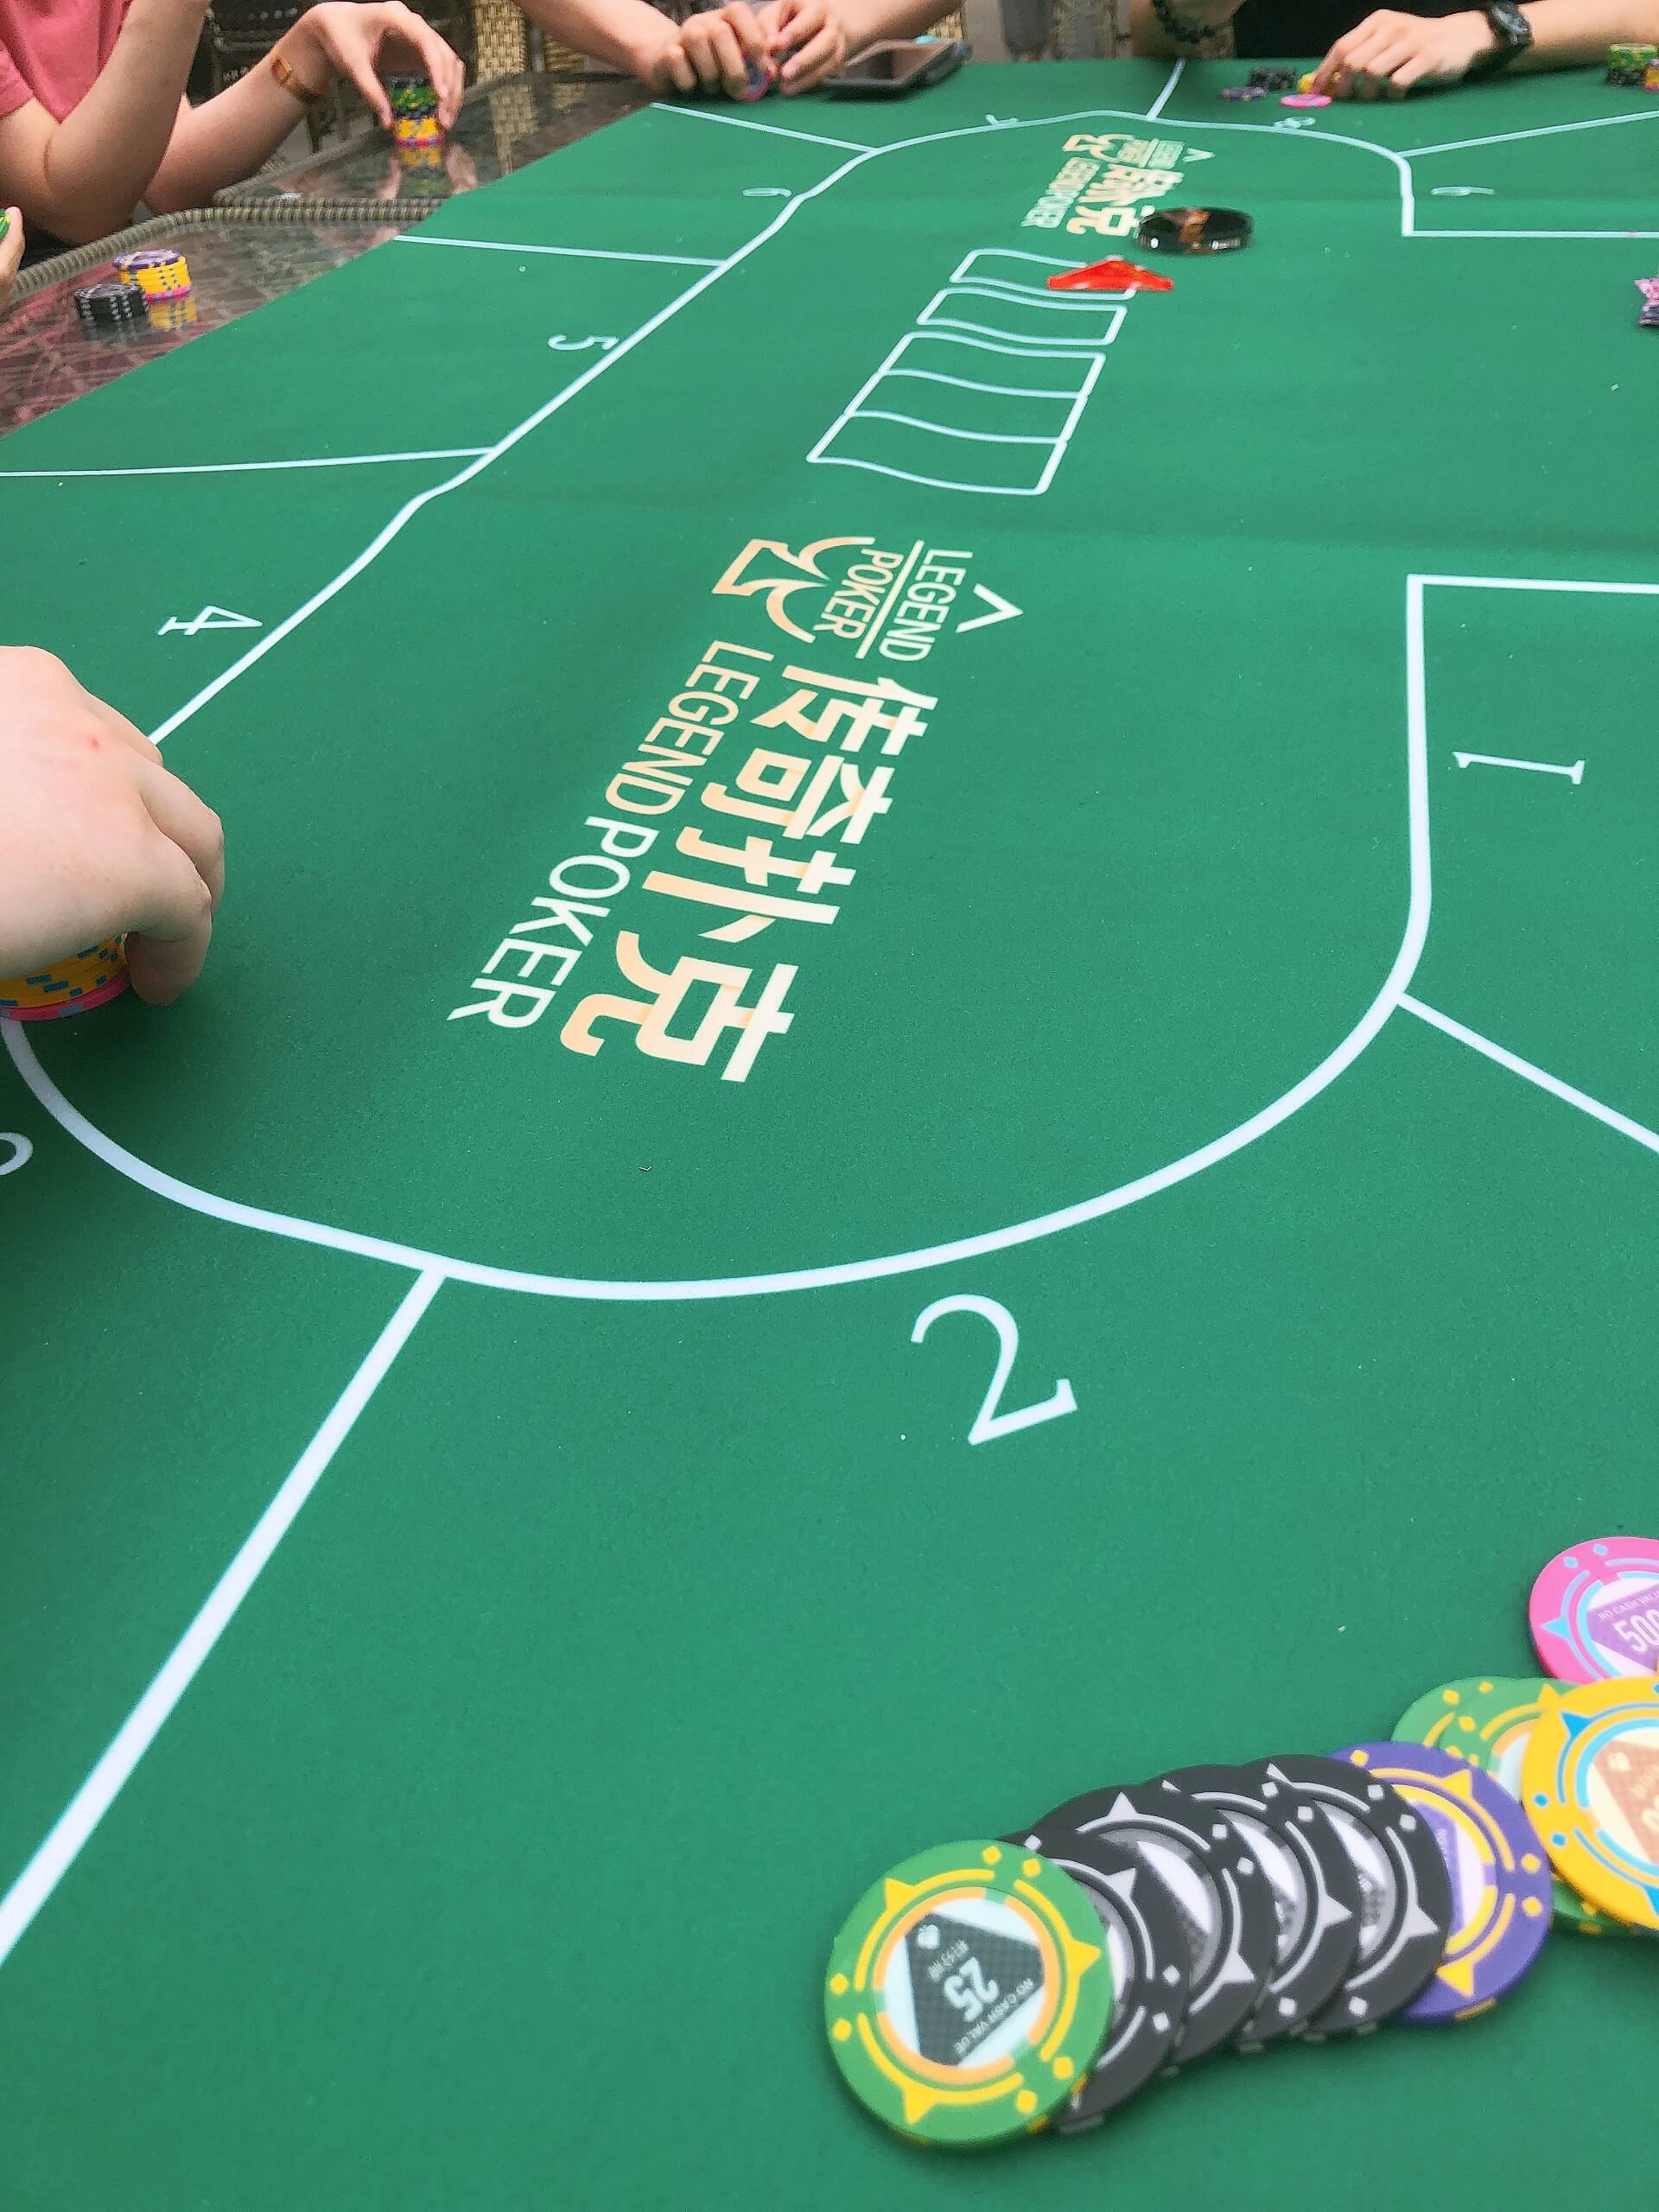 在传奇扑克里怎样才可以成功捍卫盲注呢?